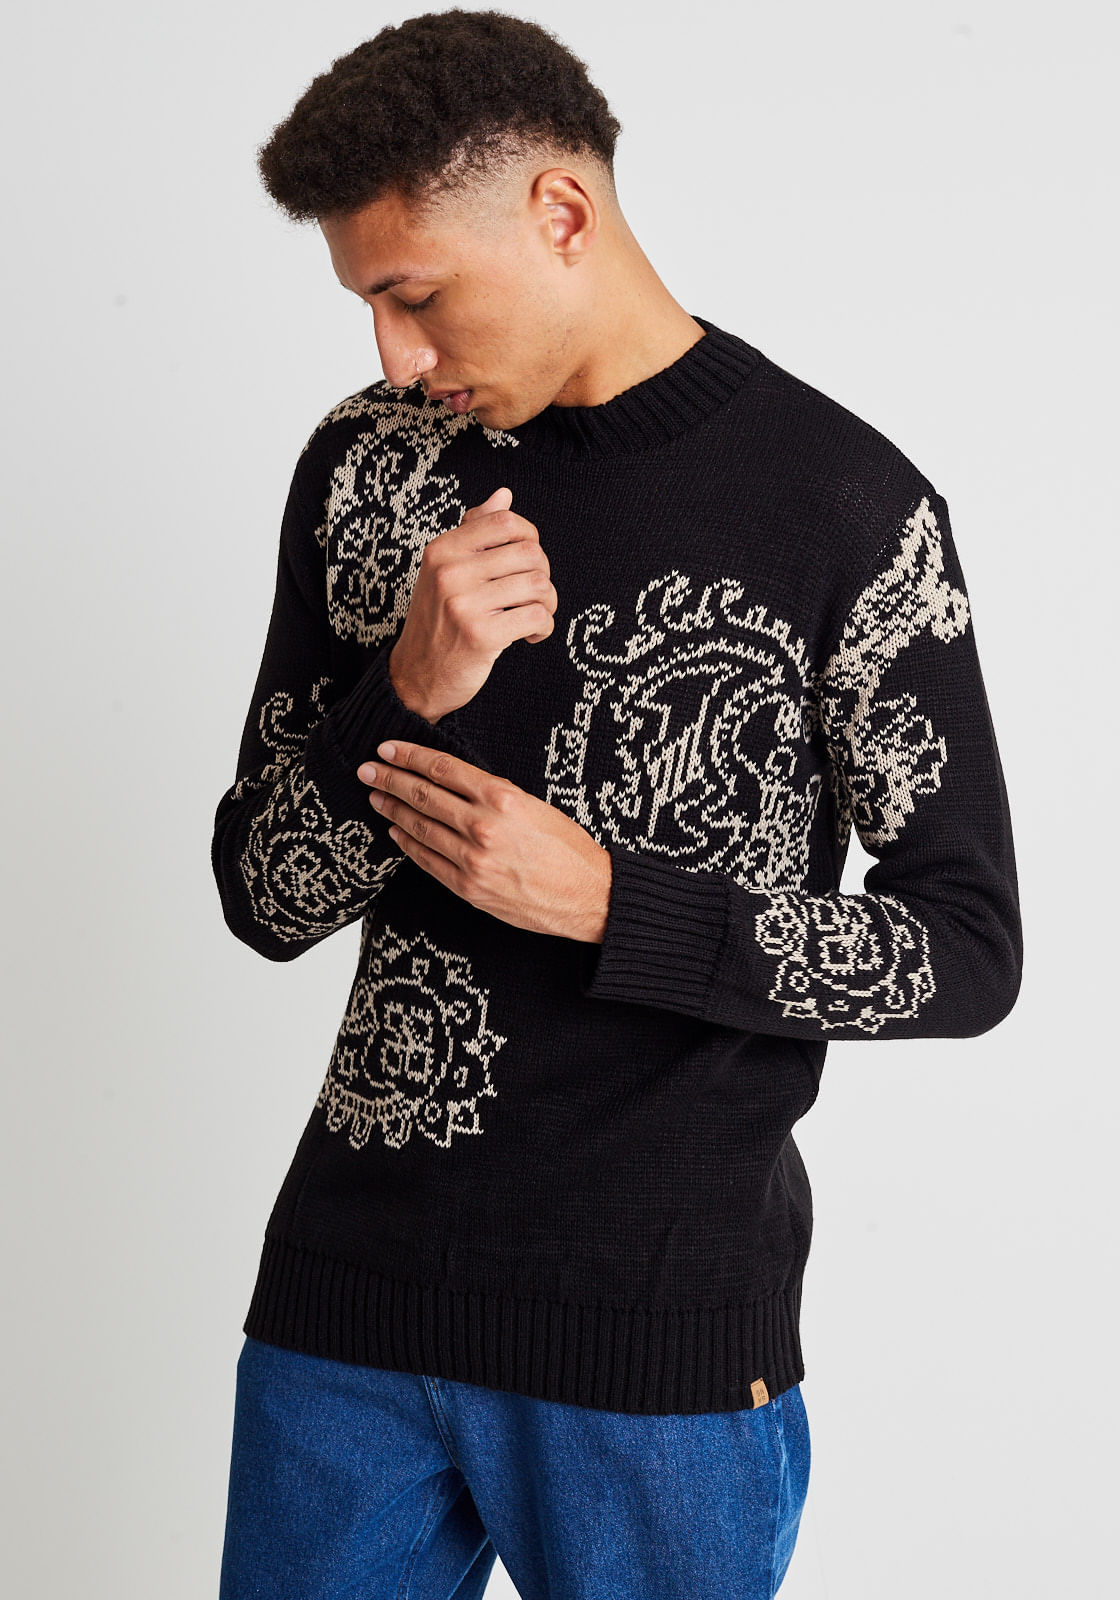 modelo com blusa de tricot preto estampa paisley